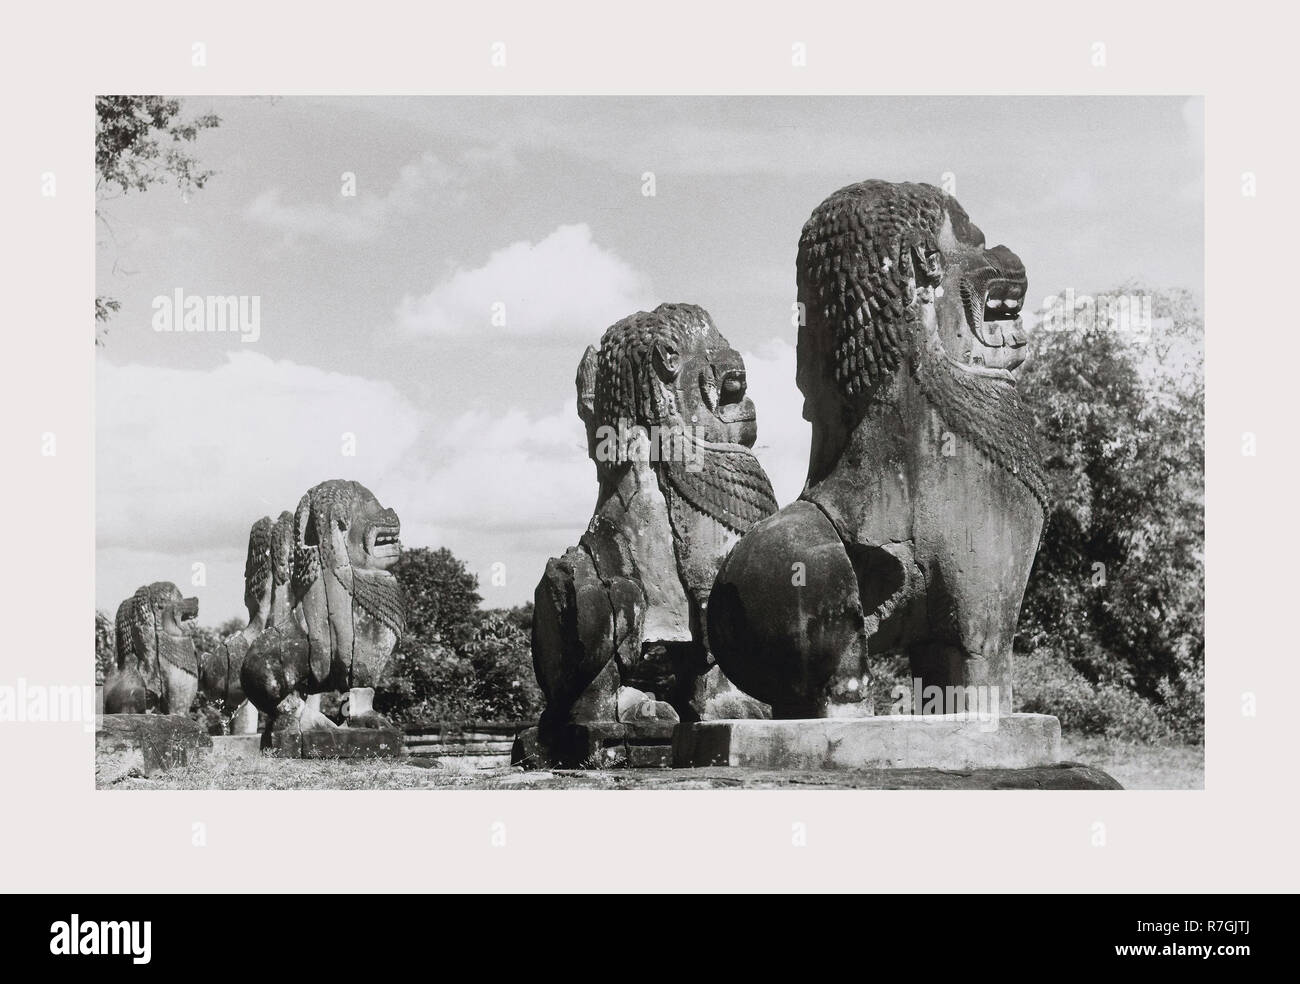 Kambodscha, Angkor, Preah Ko, 1966 oder früher, verlorenen Städte Asiens, Architektur, Südostasien. Stockfoto